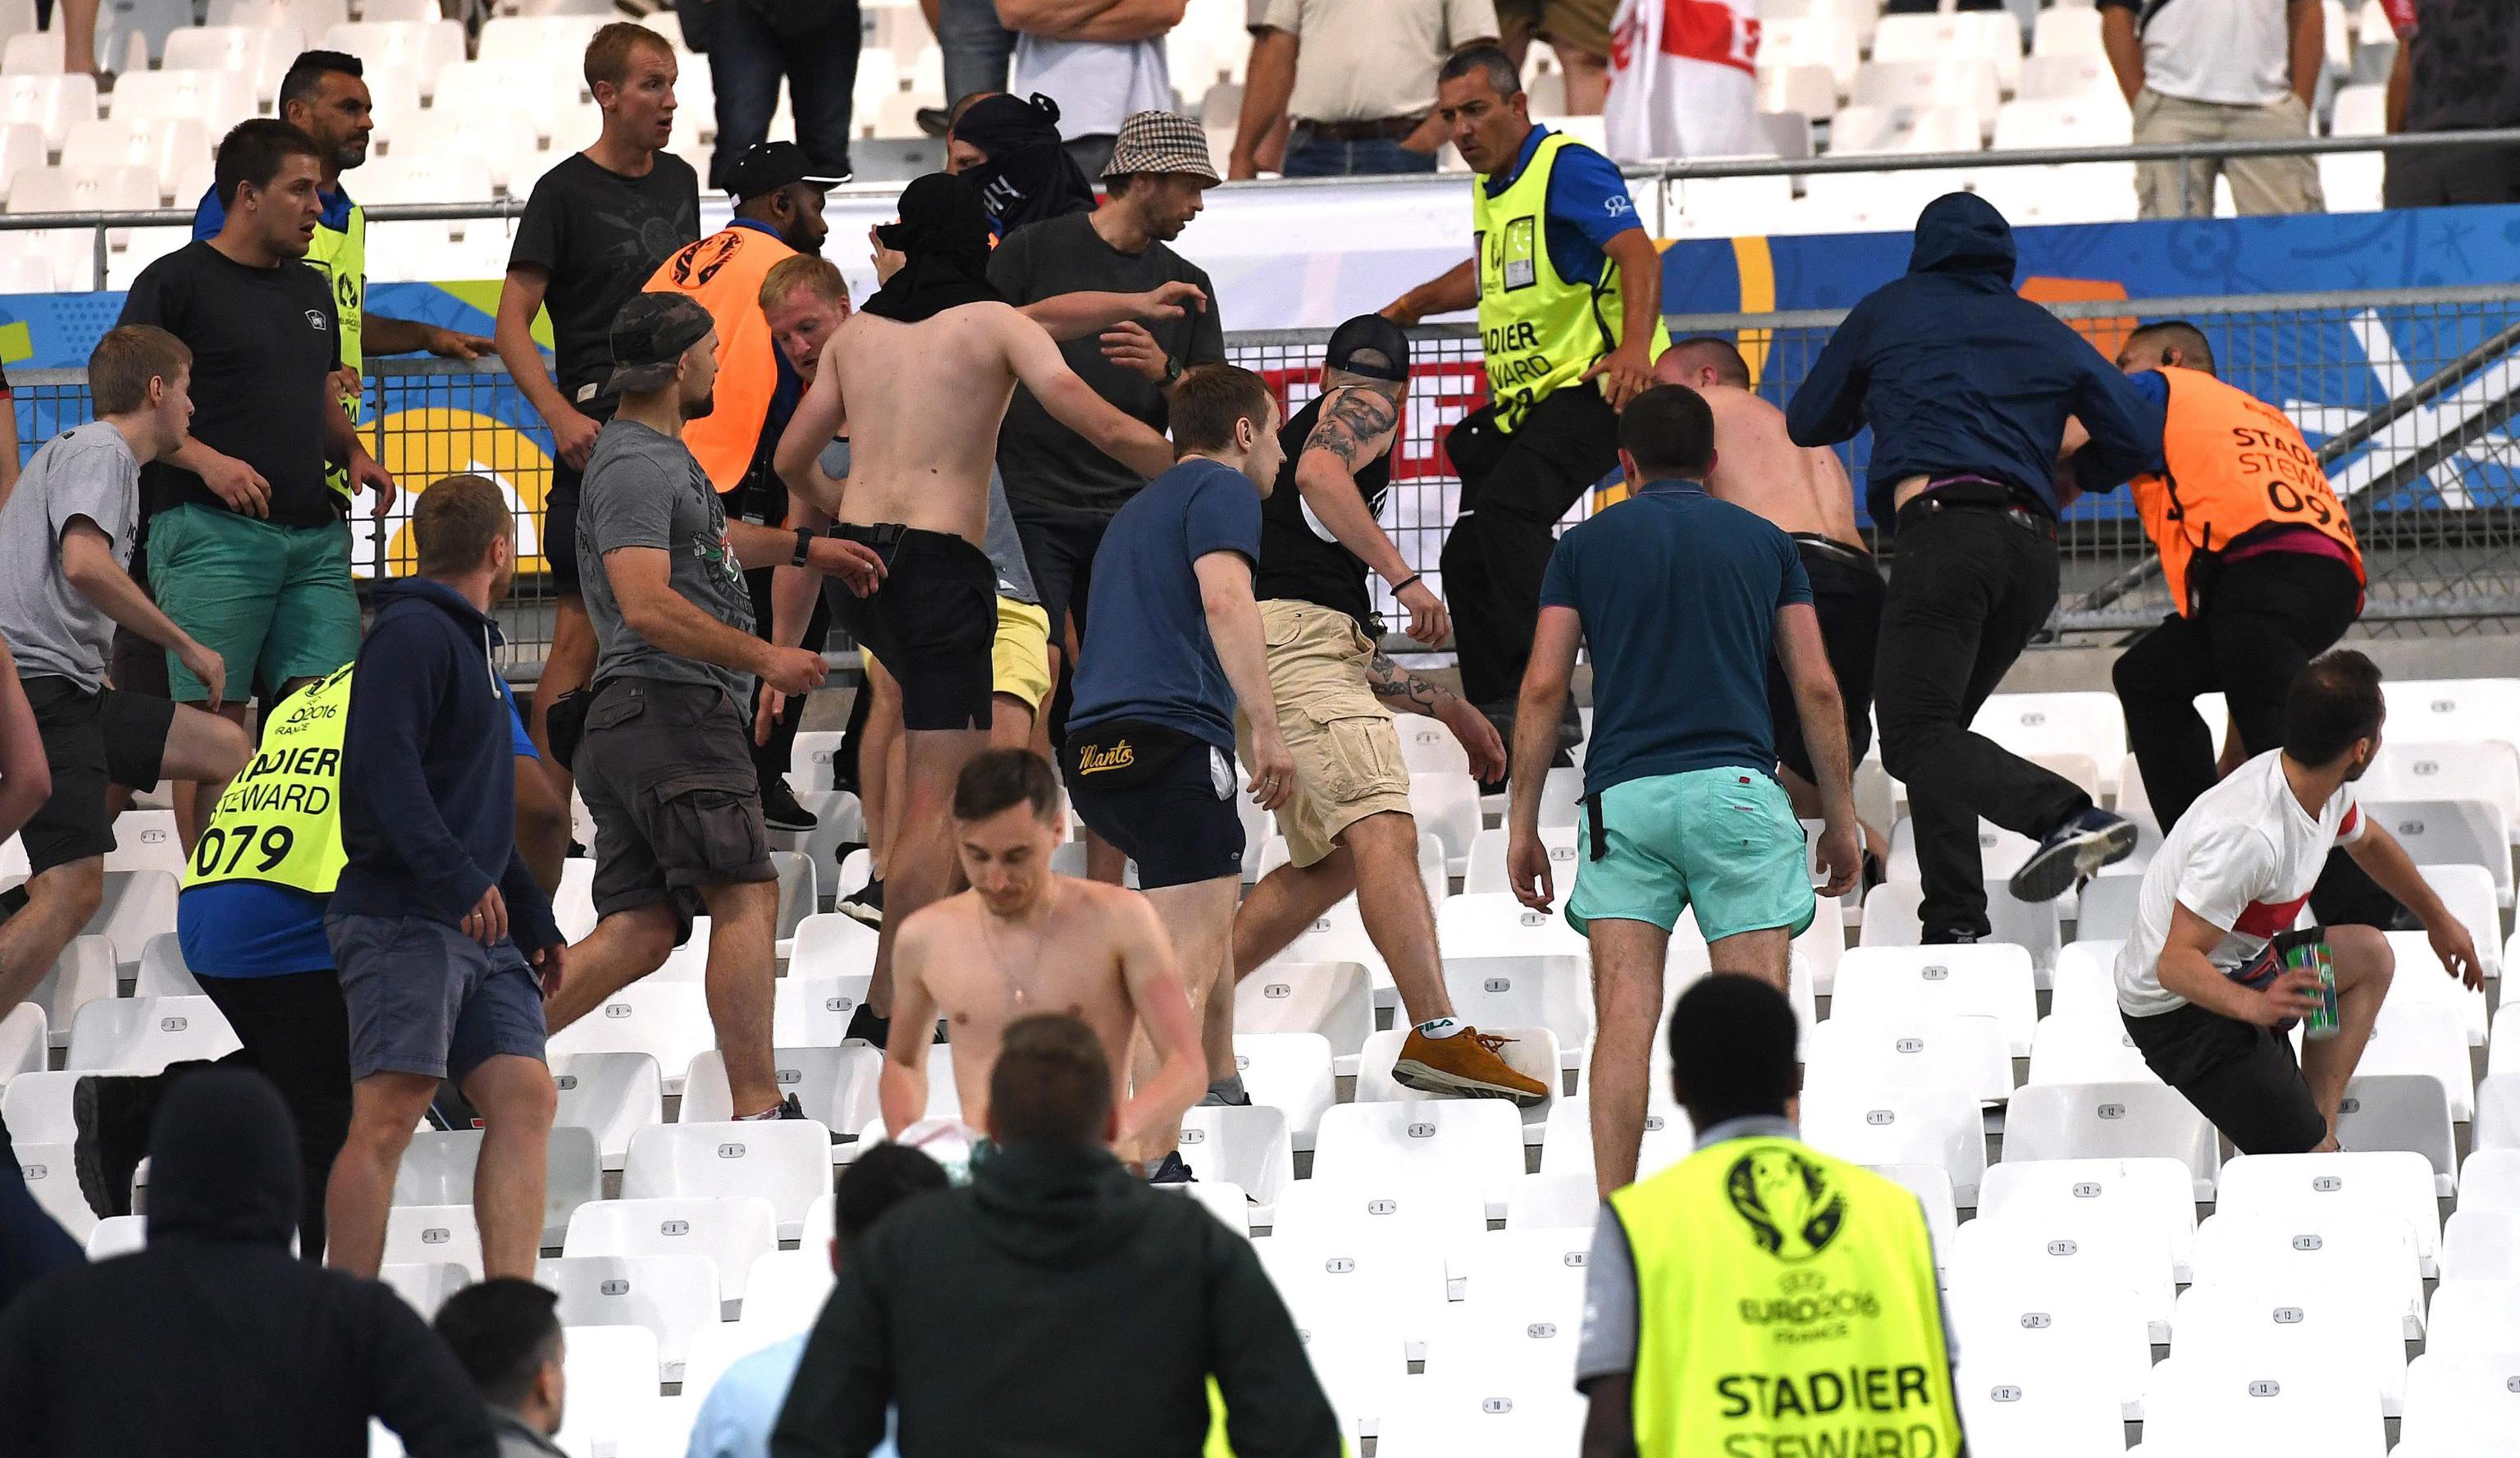 Руски експерти посочват, че във Франция е влязла организирана група от около 300 хулигани. Най-зловещите фракции на крайни фенове на футболните отбори в Русия са се обединили и са изпратили хора на Евро 2016